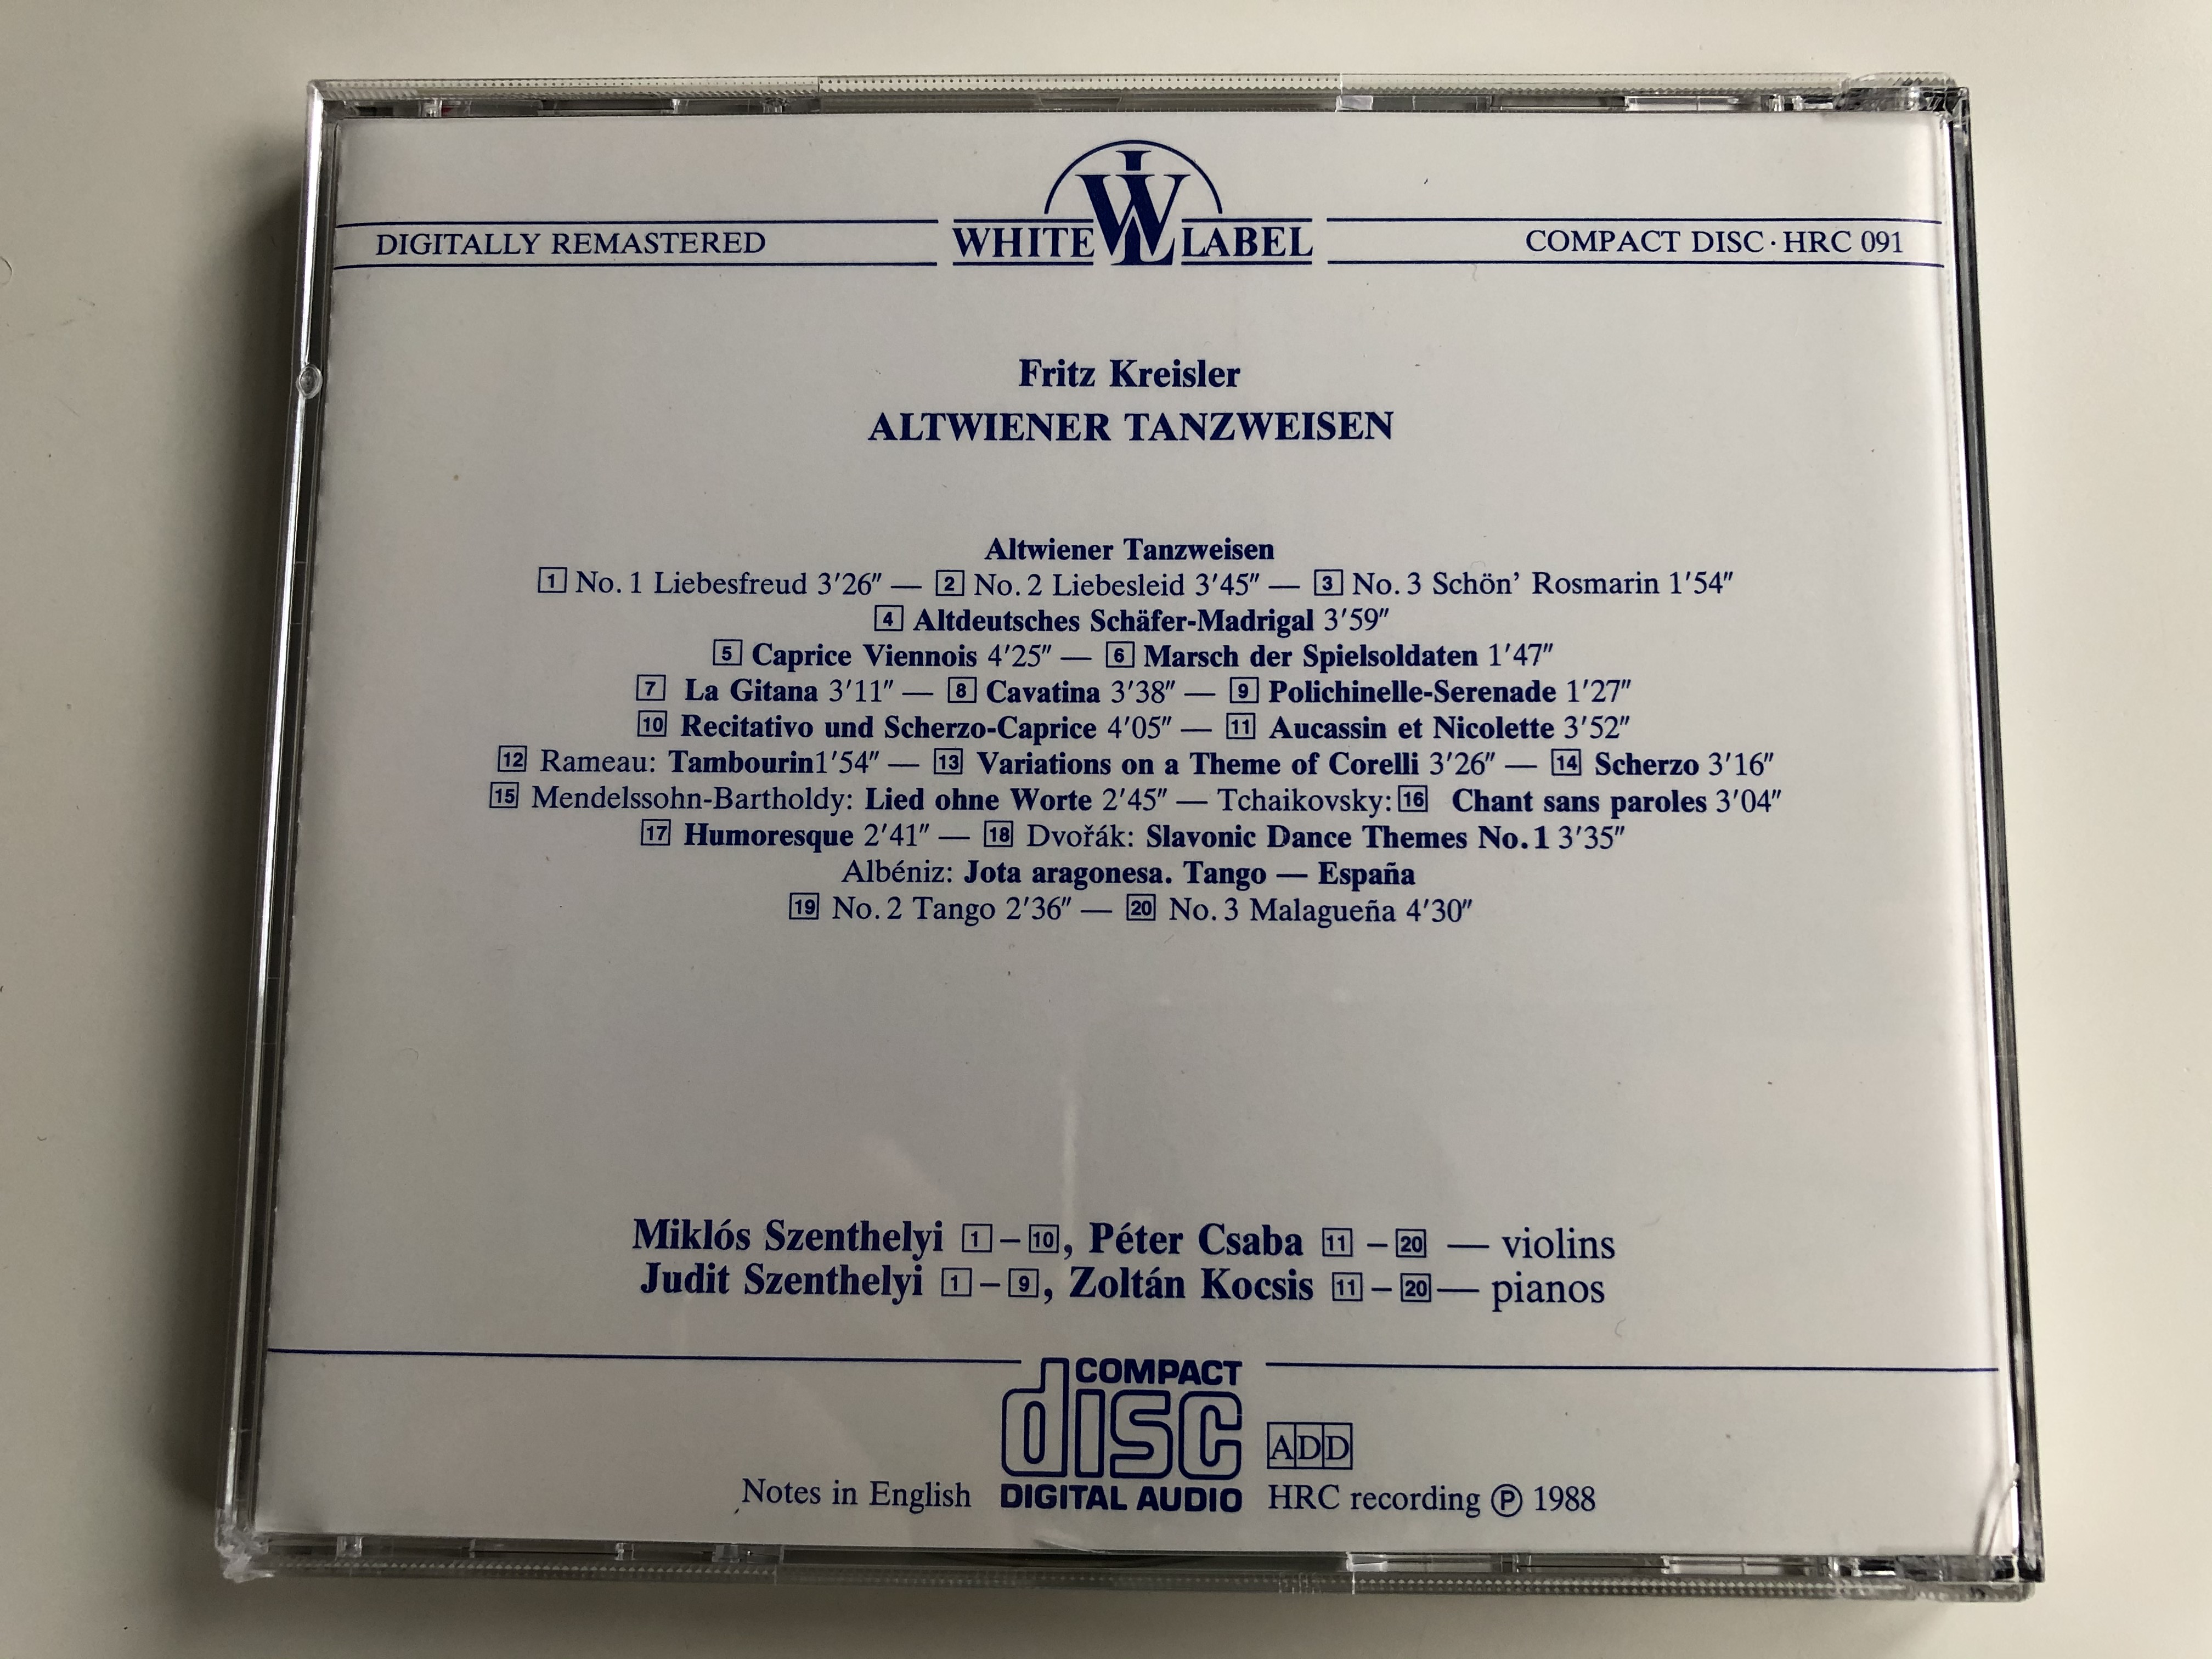 altwiener-tanzweisen-fritz-kreisler-miklos-szenthelyi-peter-csaba-violins-judit-szenthelyi-zoltan-kocsis-pianos-hungaroton-audio-cd-1988-stereo-hrc-091-4-.jpg